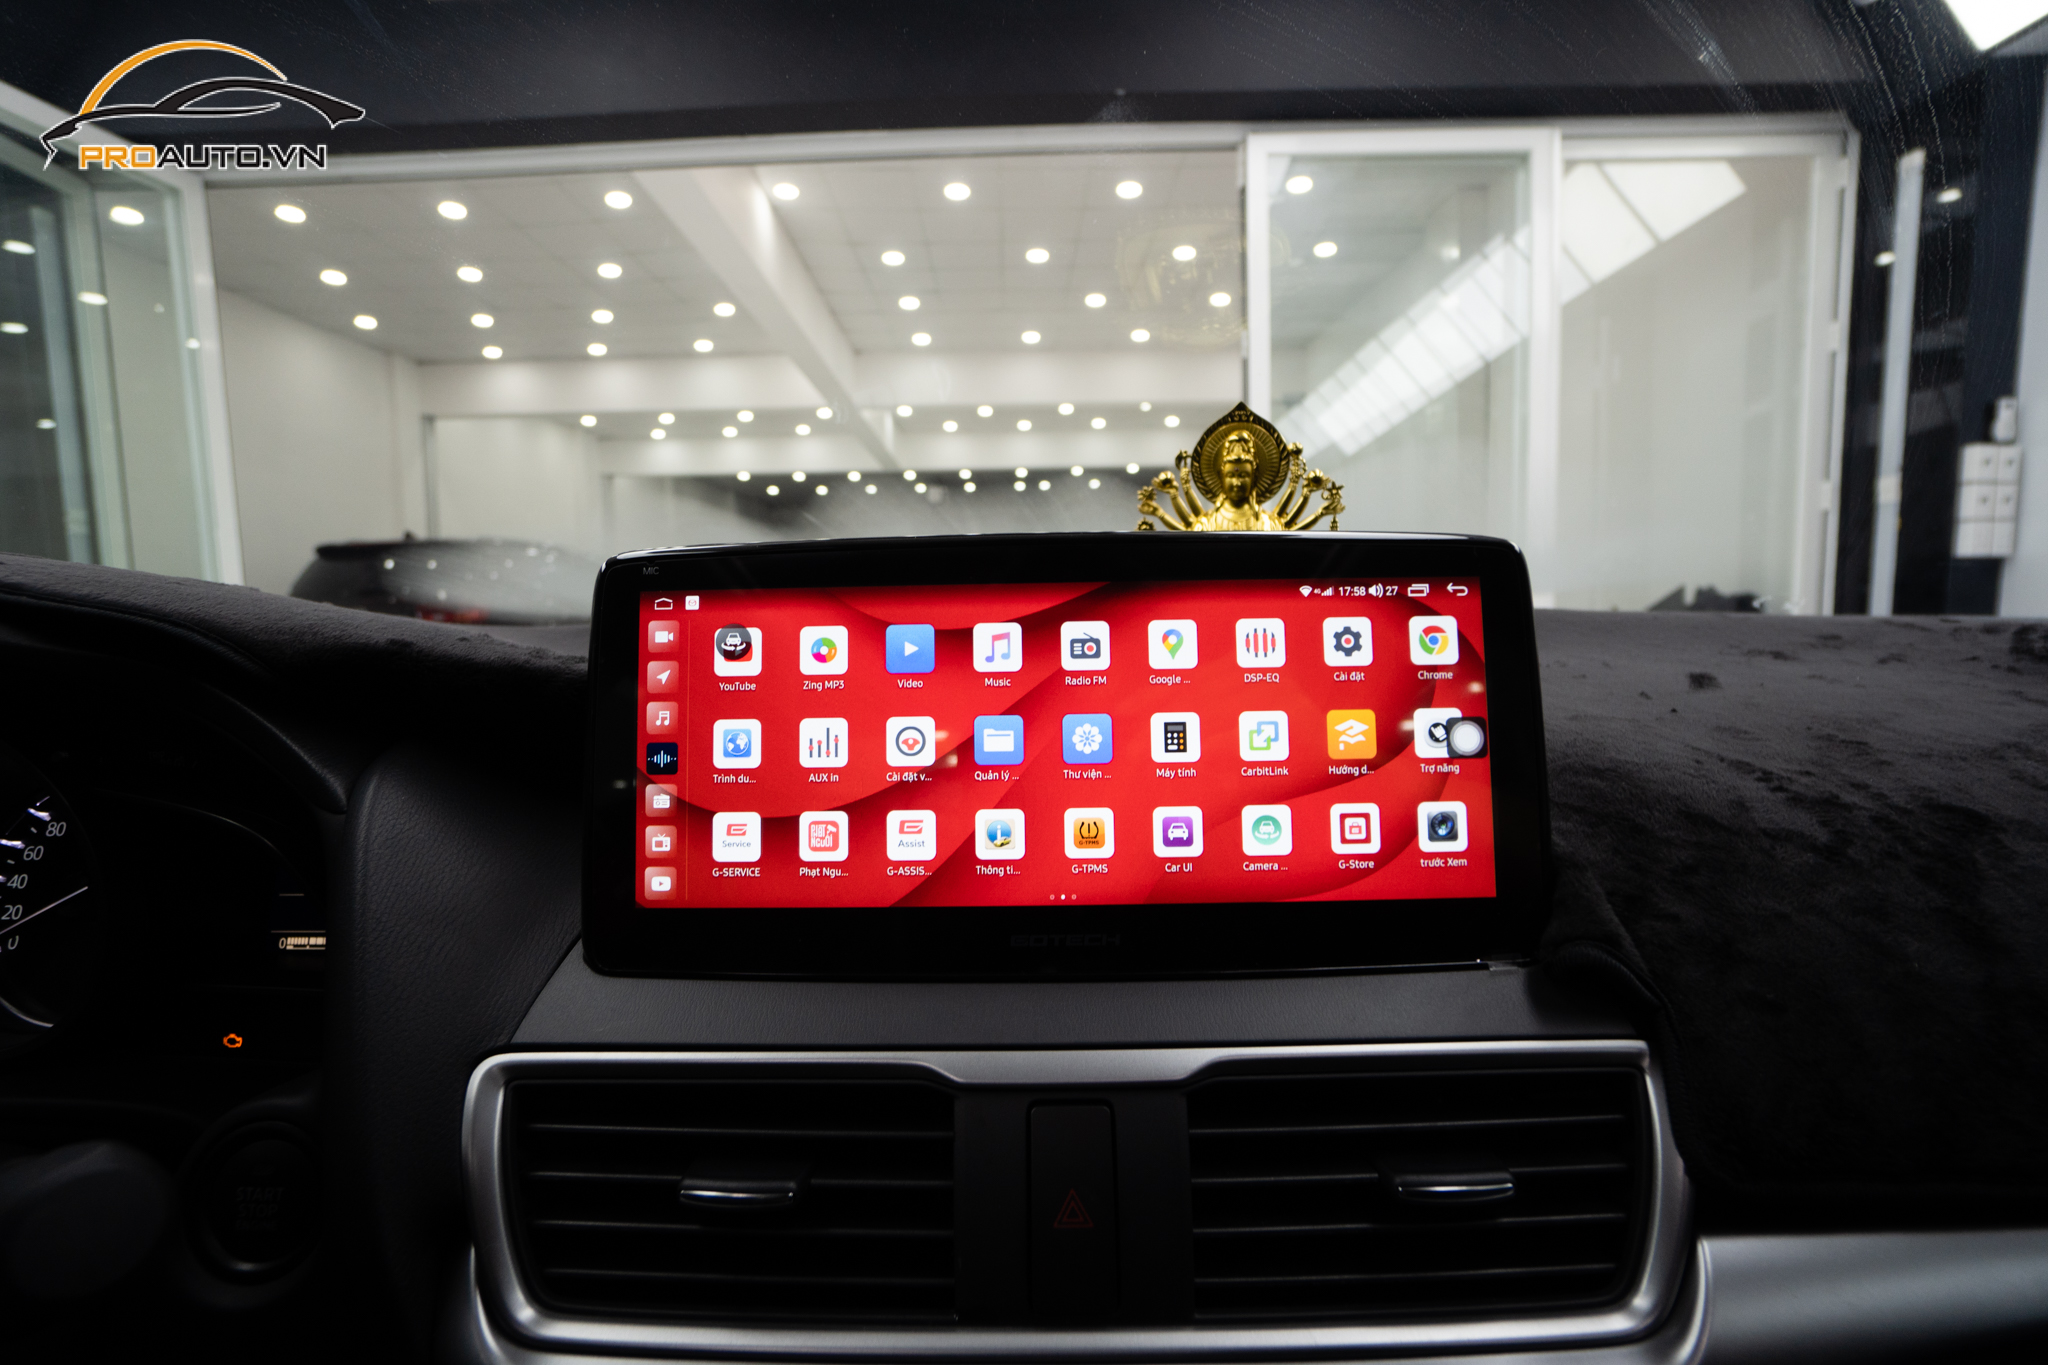 Thương hiệu màn hình android ô tô Bravigo